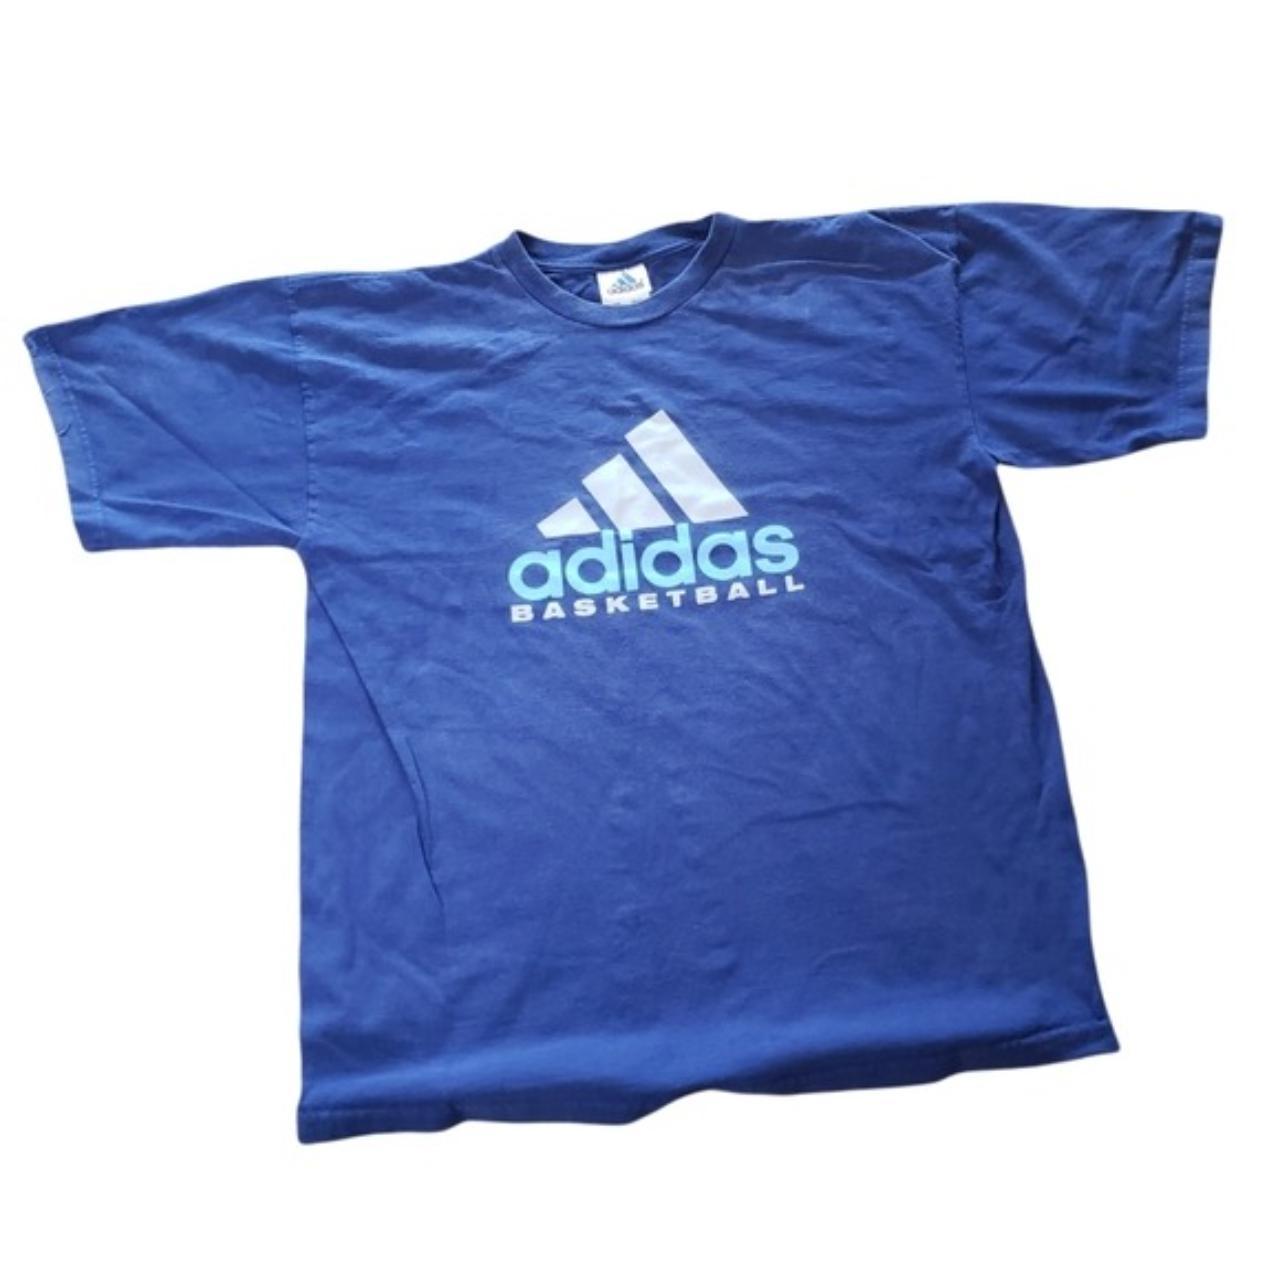 Blue Adidas Basketball Shirt XL Short Sleeve... - Depop